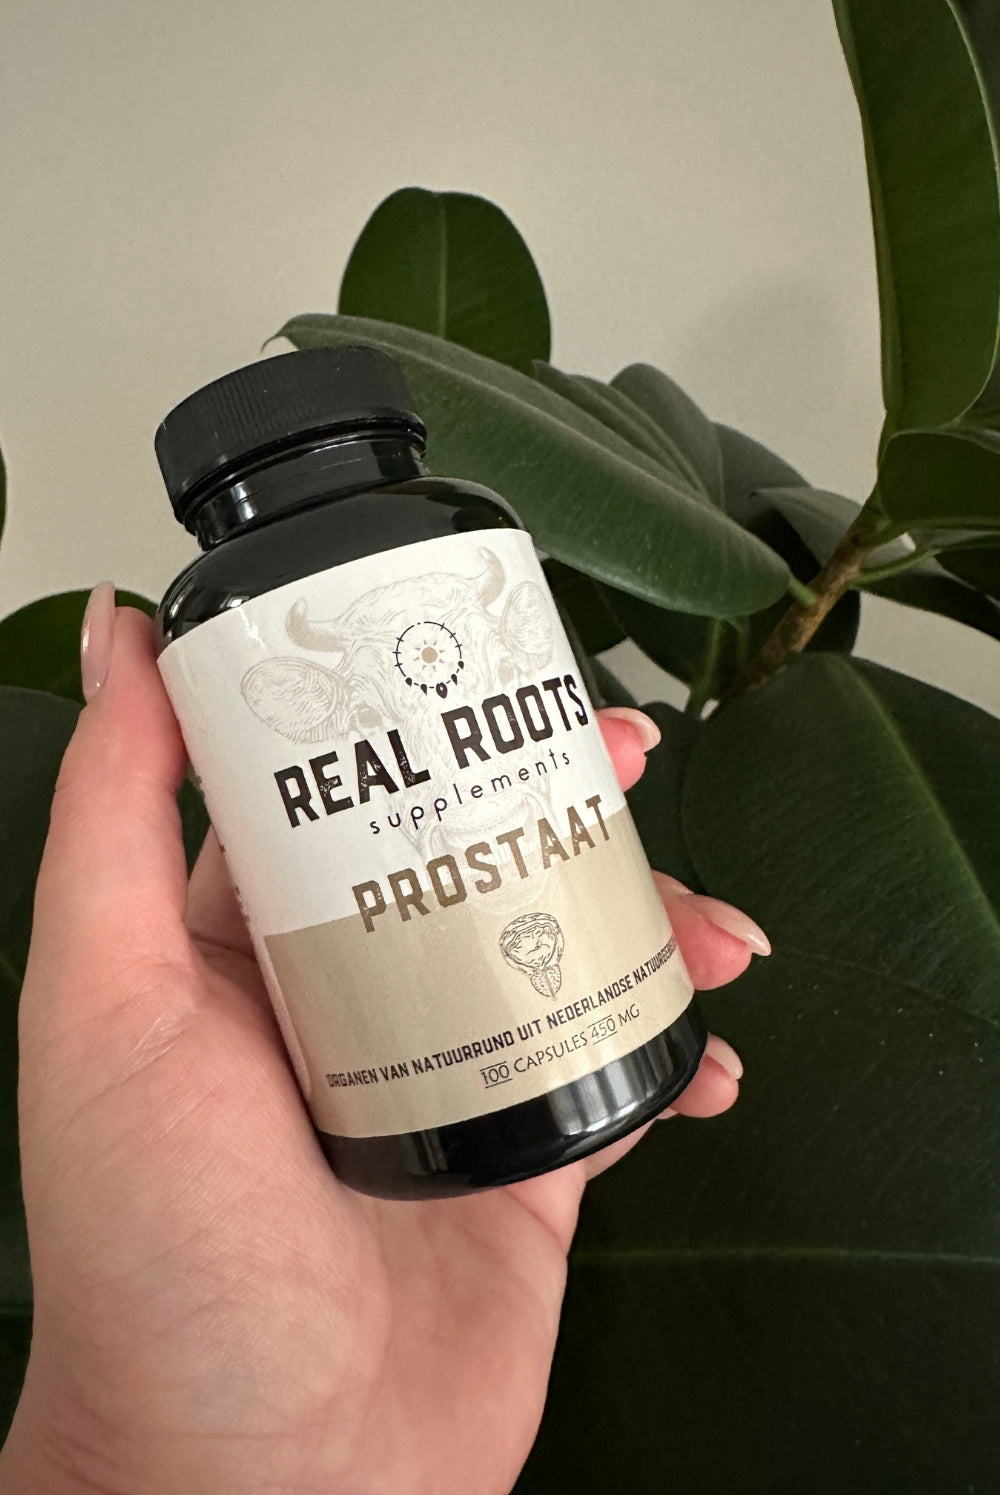 Real Roots Prostaat Orgaansupplementen